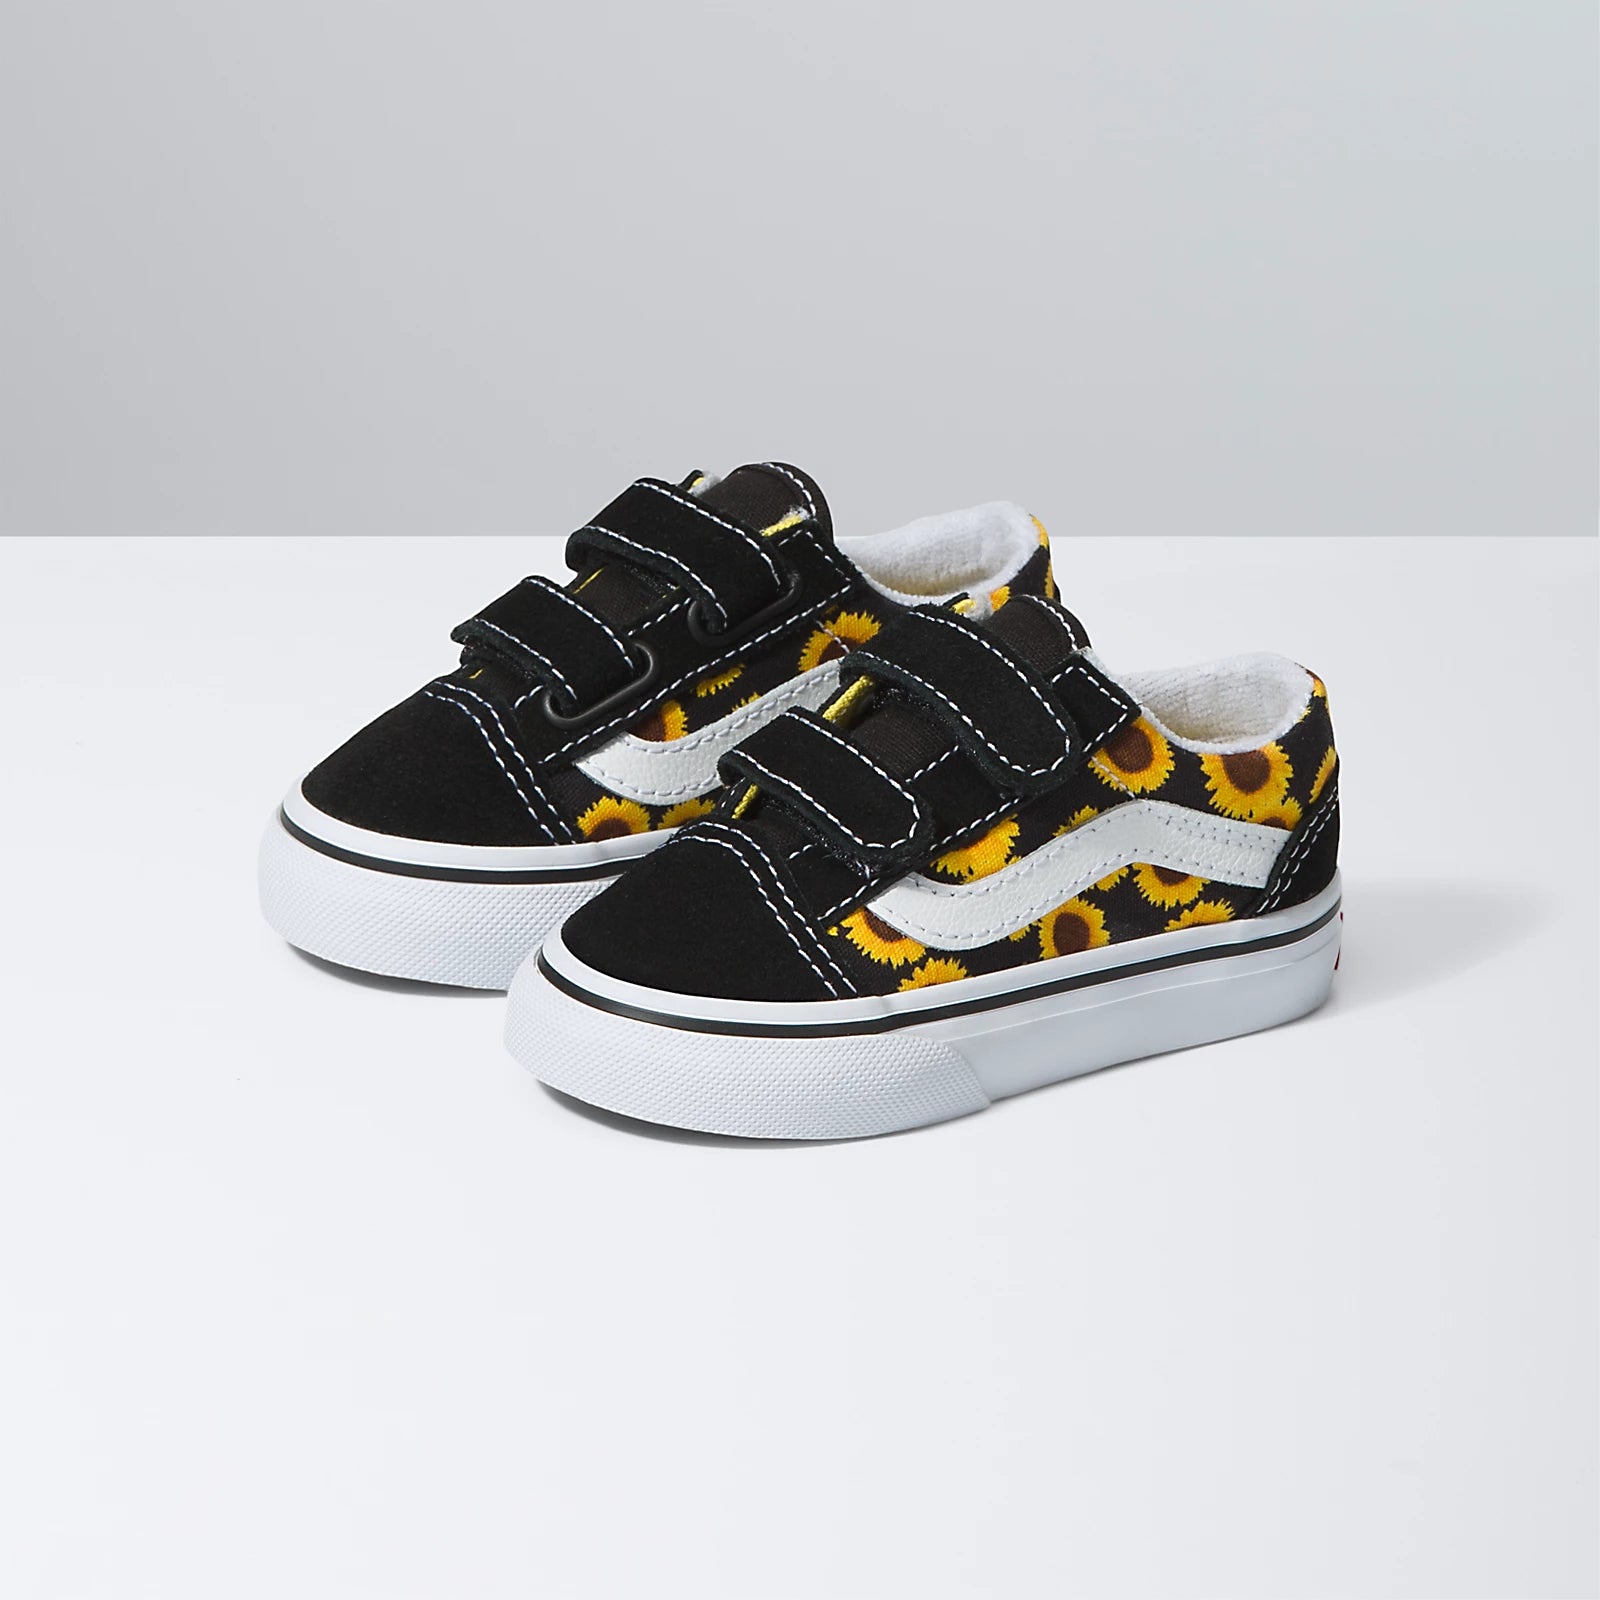 Vans - Old Skool Yellow Checkerboard Sneakers